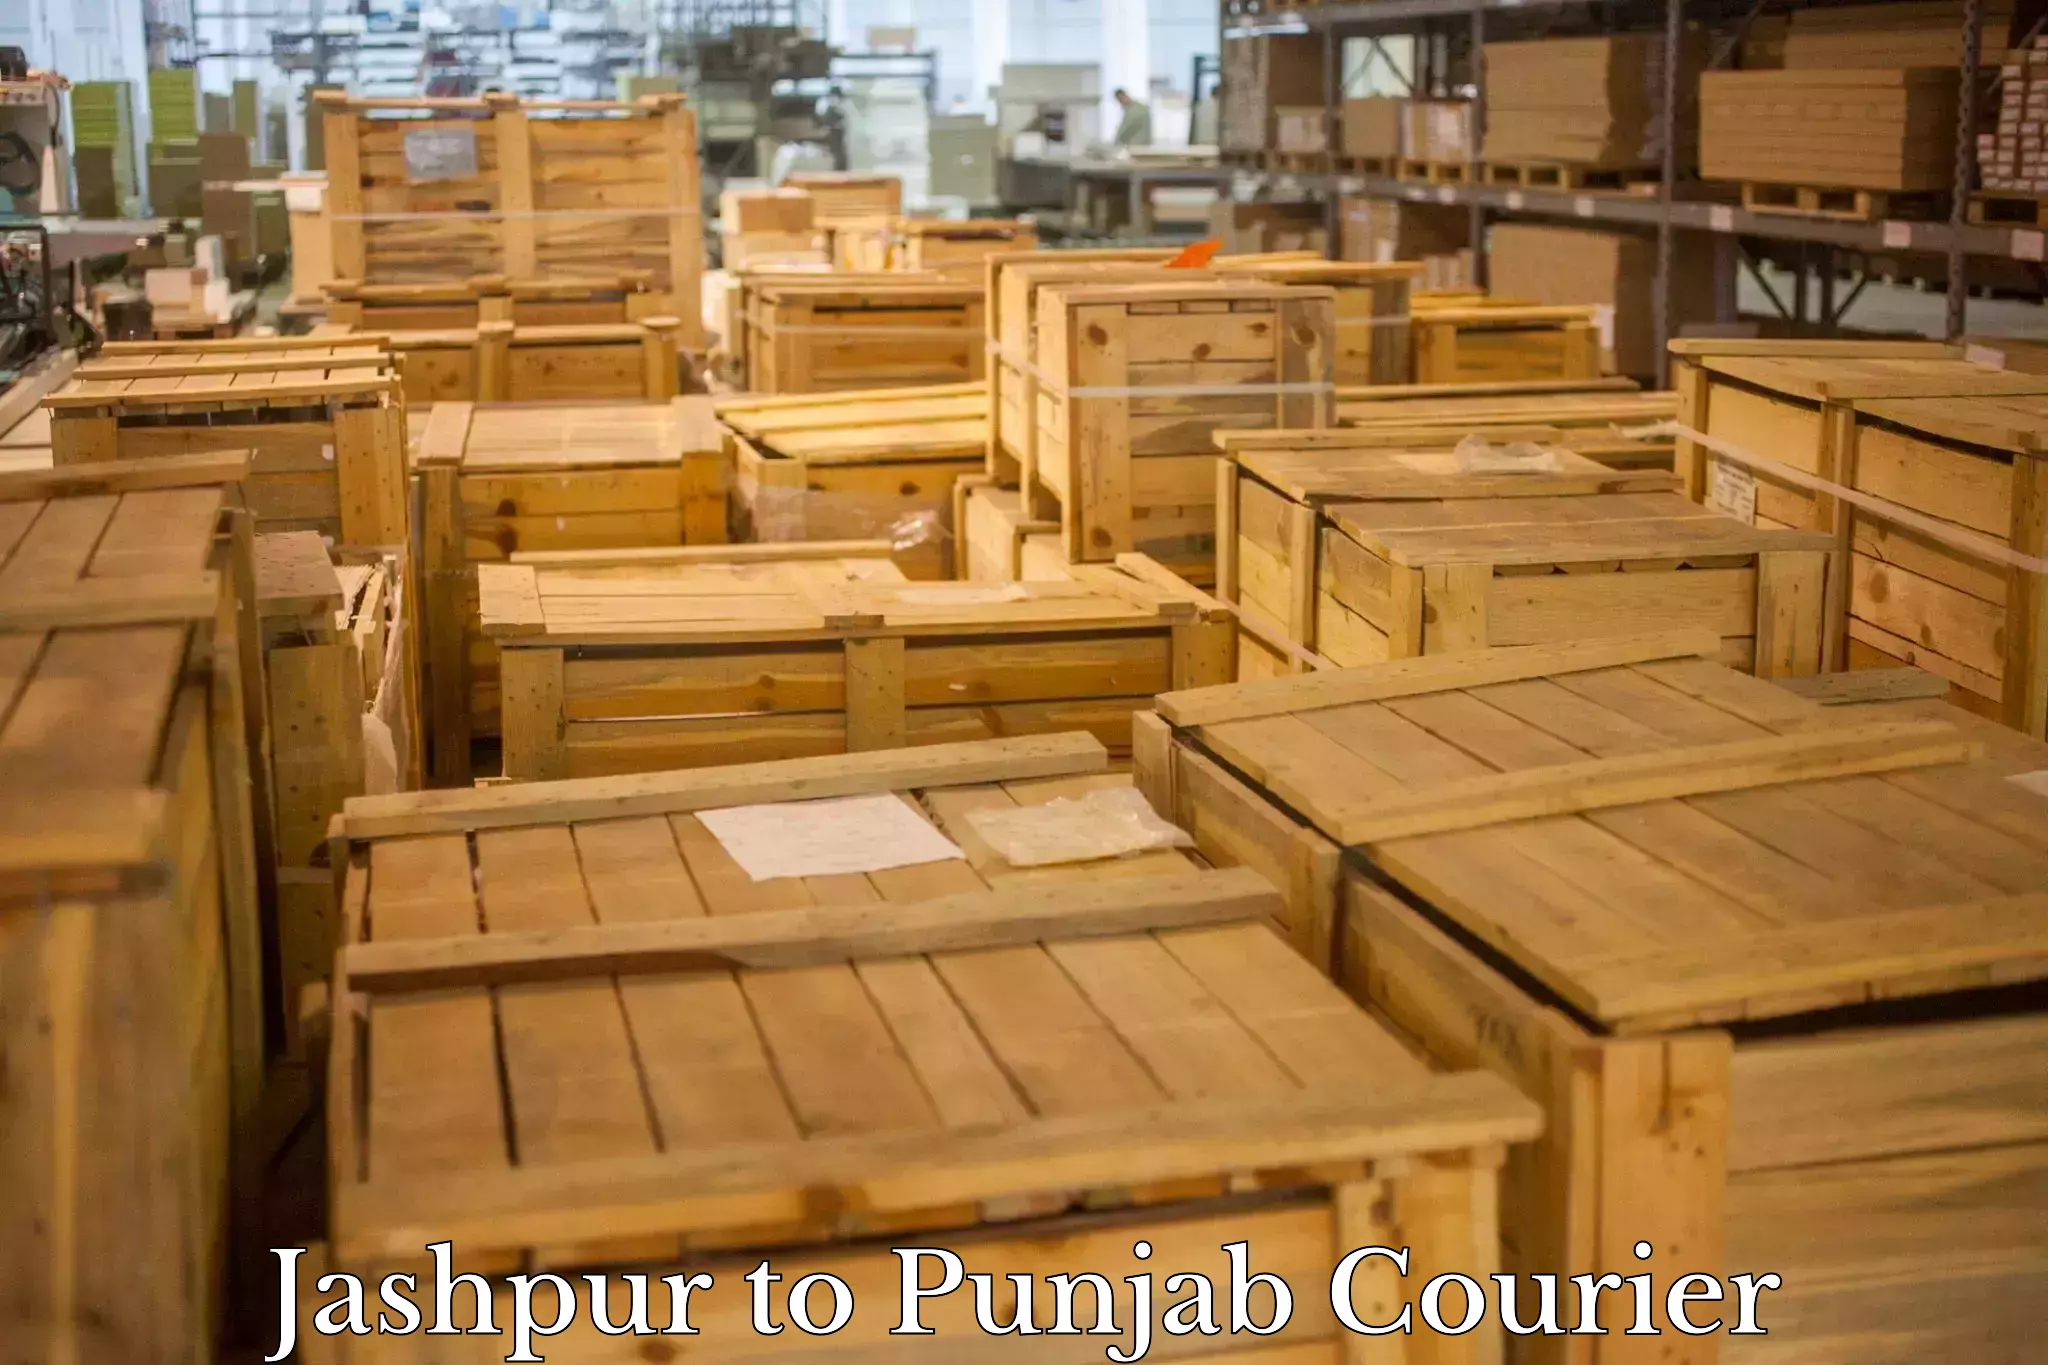 Global parcel delivery Jashpur to Mandi Gobindgarh